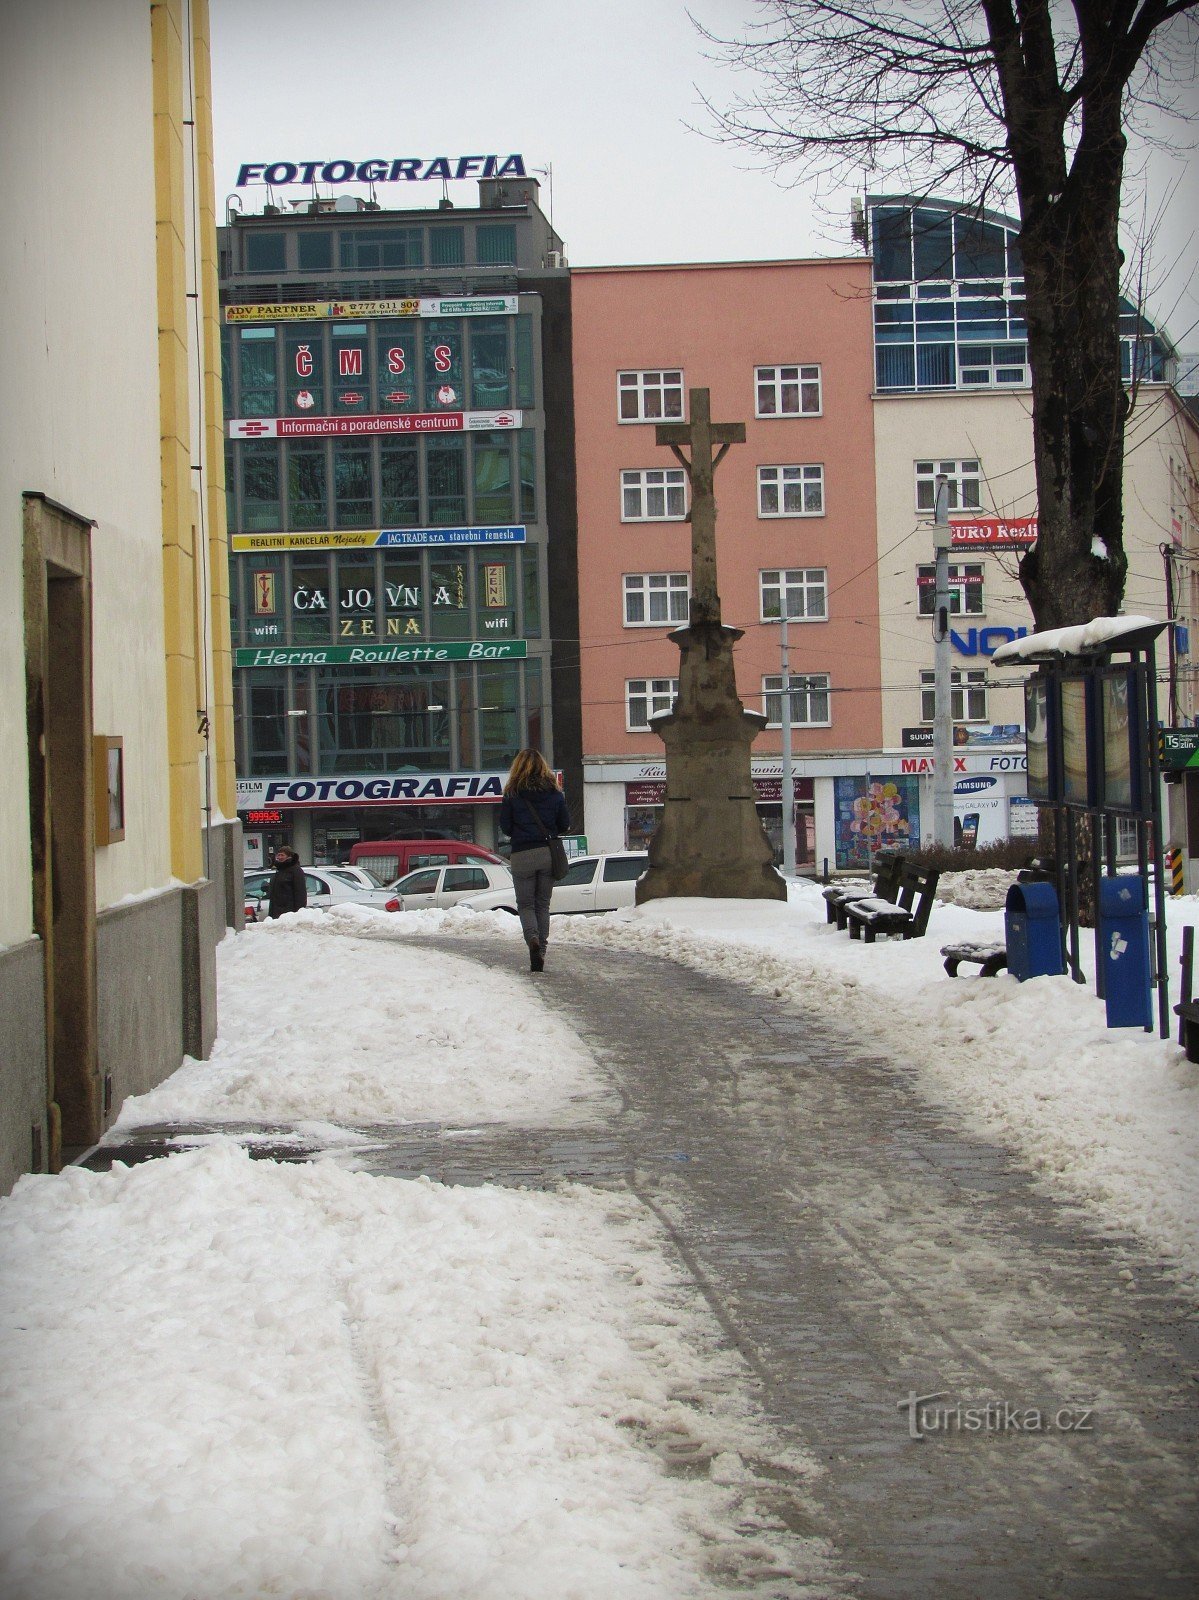 Zlín - Fotobyggnad